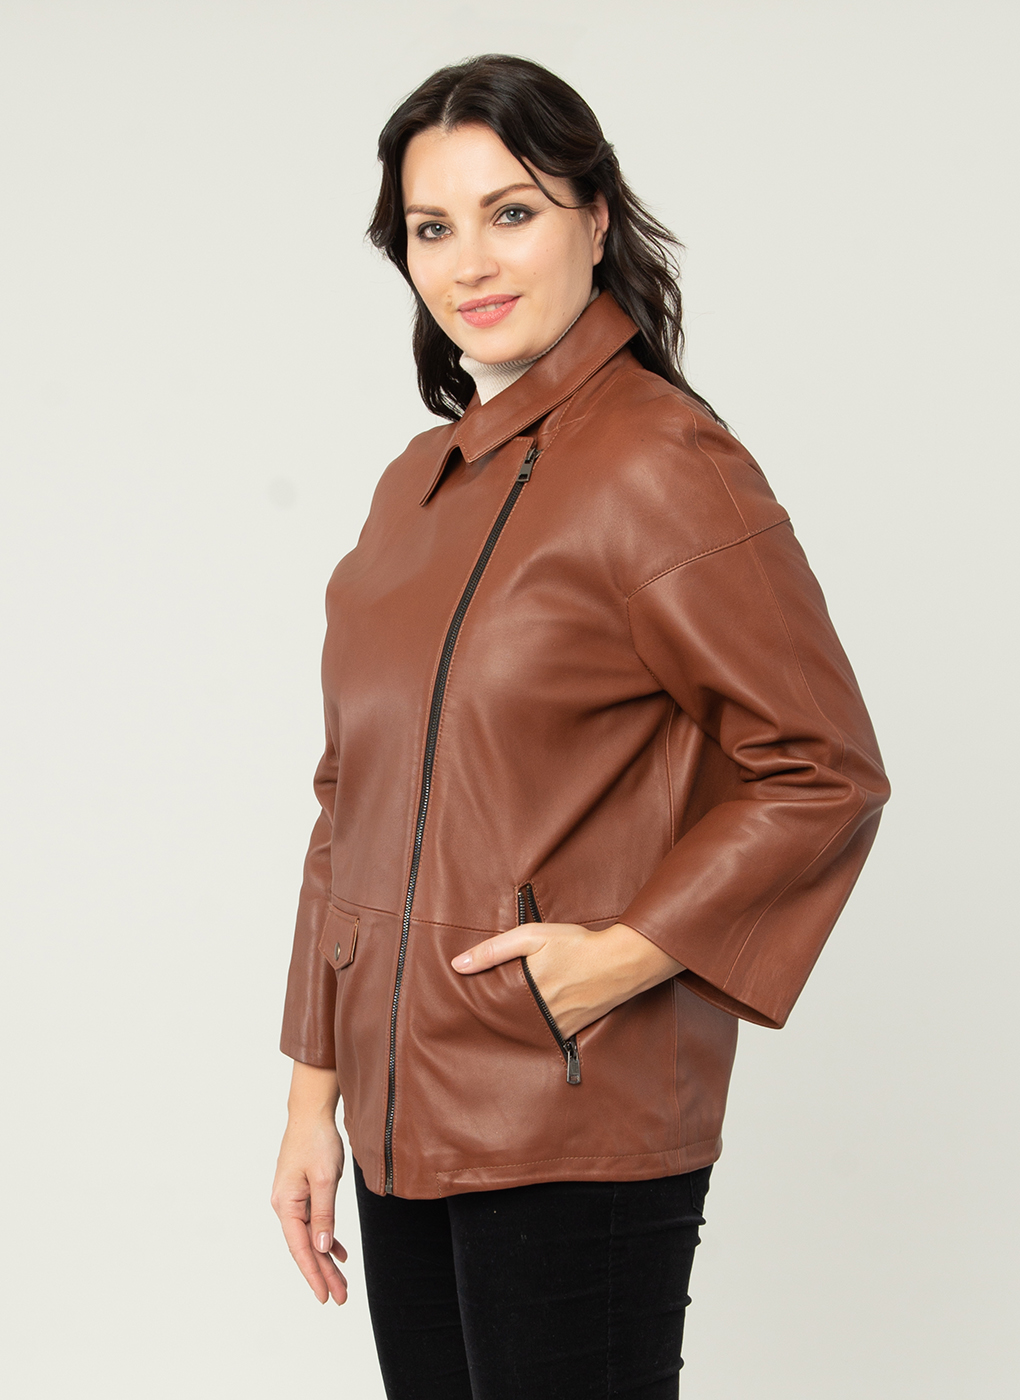 Кожаная куртка женская Каляев 1593805 коричневая 50 RU